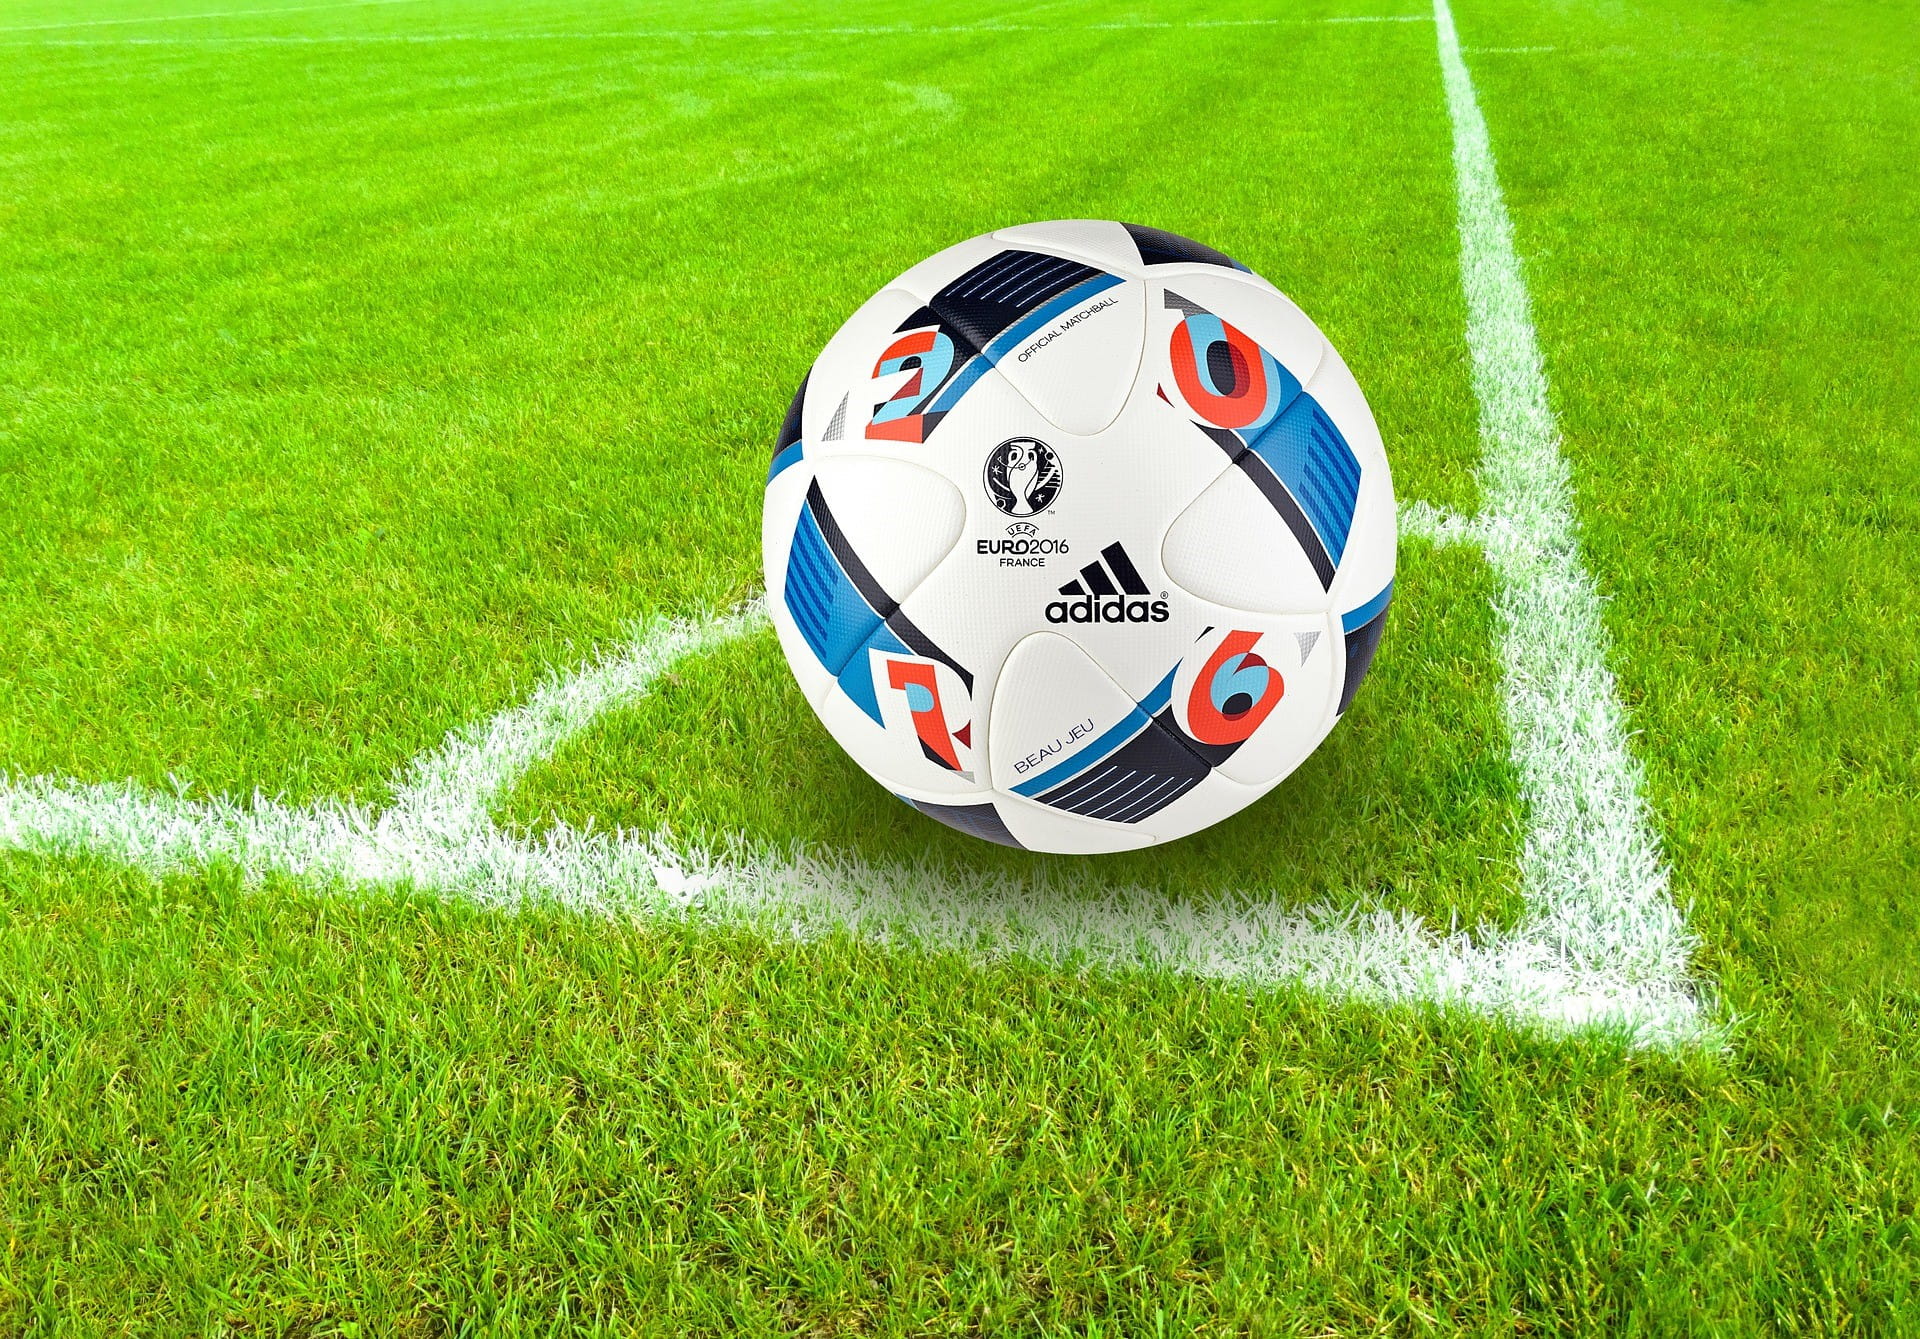 Di sudut lapangan sepak bola terdapat bola sepak yang di atasnya tercetak logo beberapa klub olahraga.